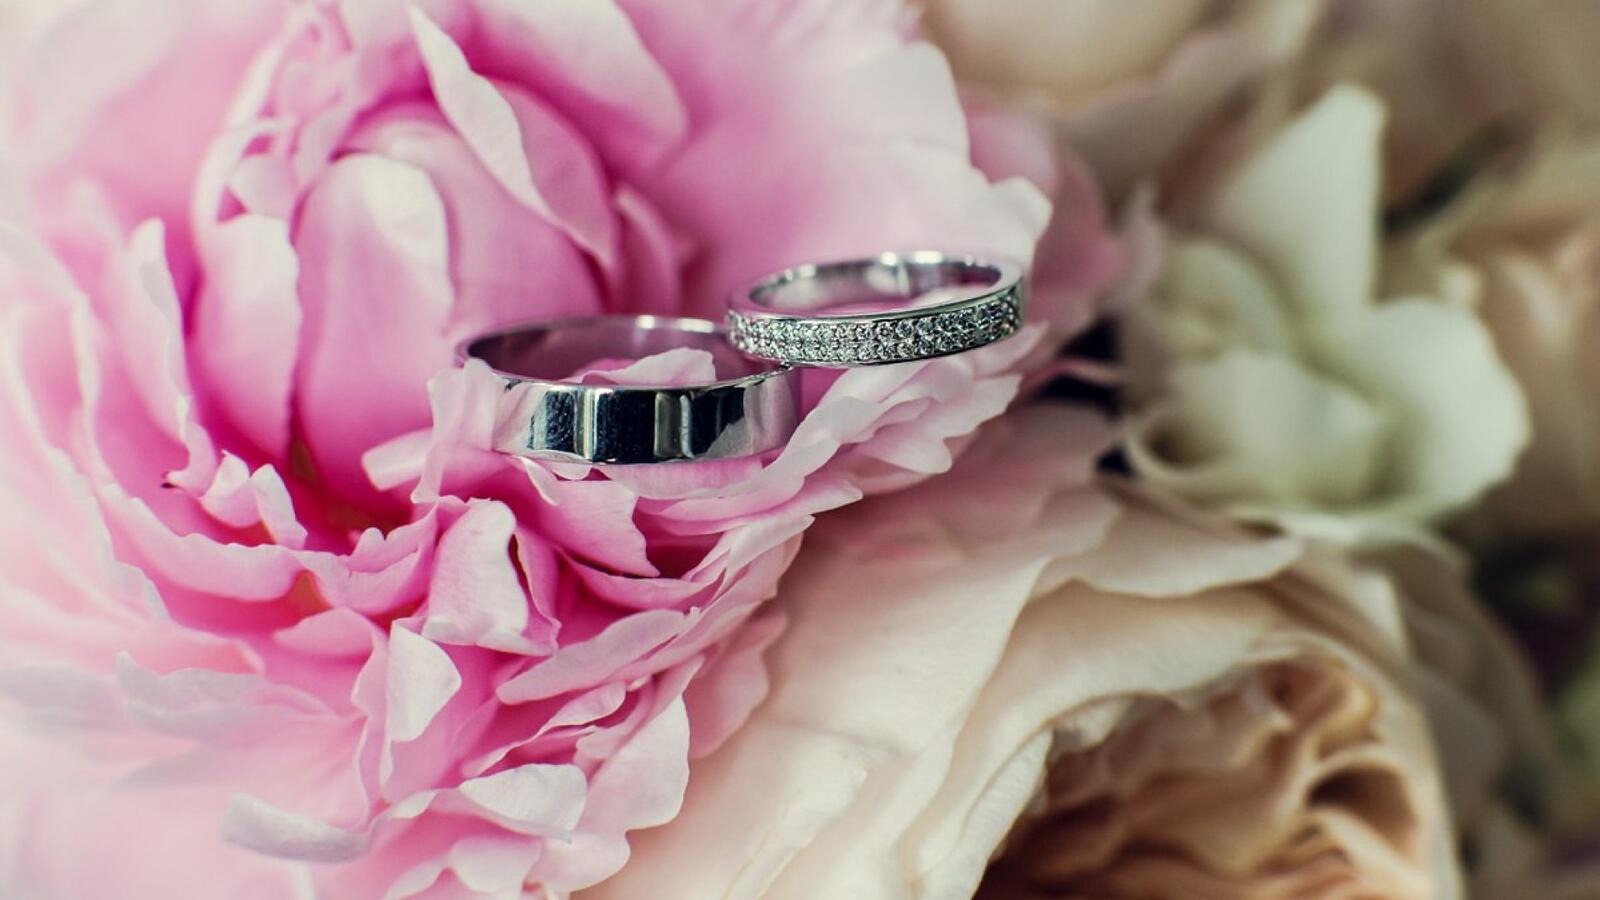 Обои свадьба кольца цветок на рабочий стол